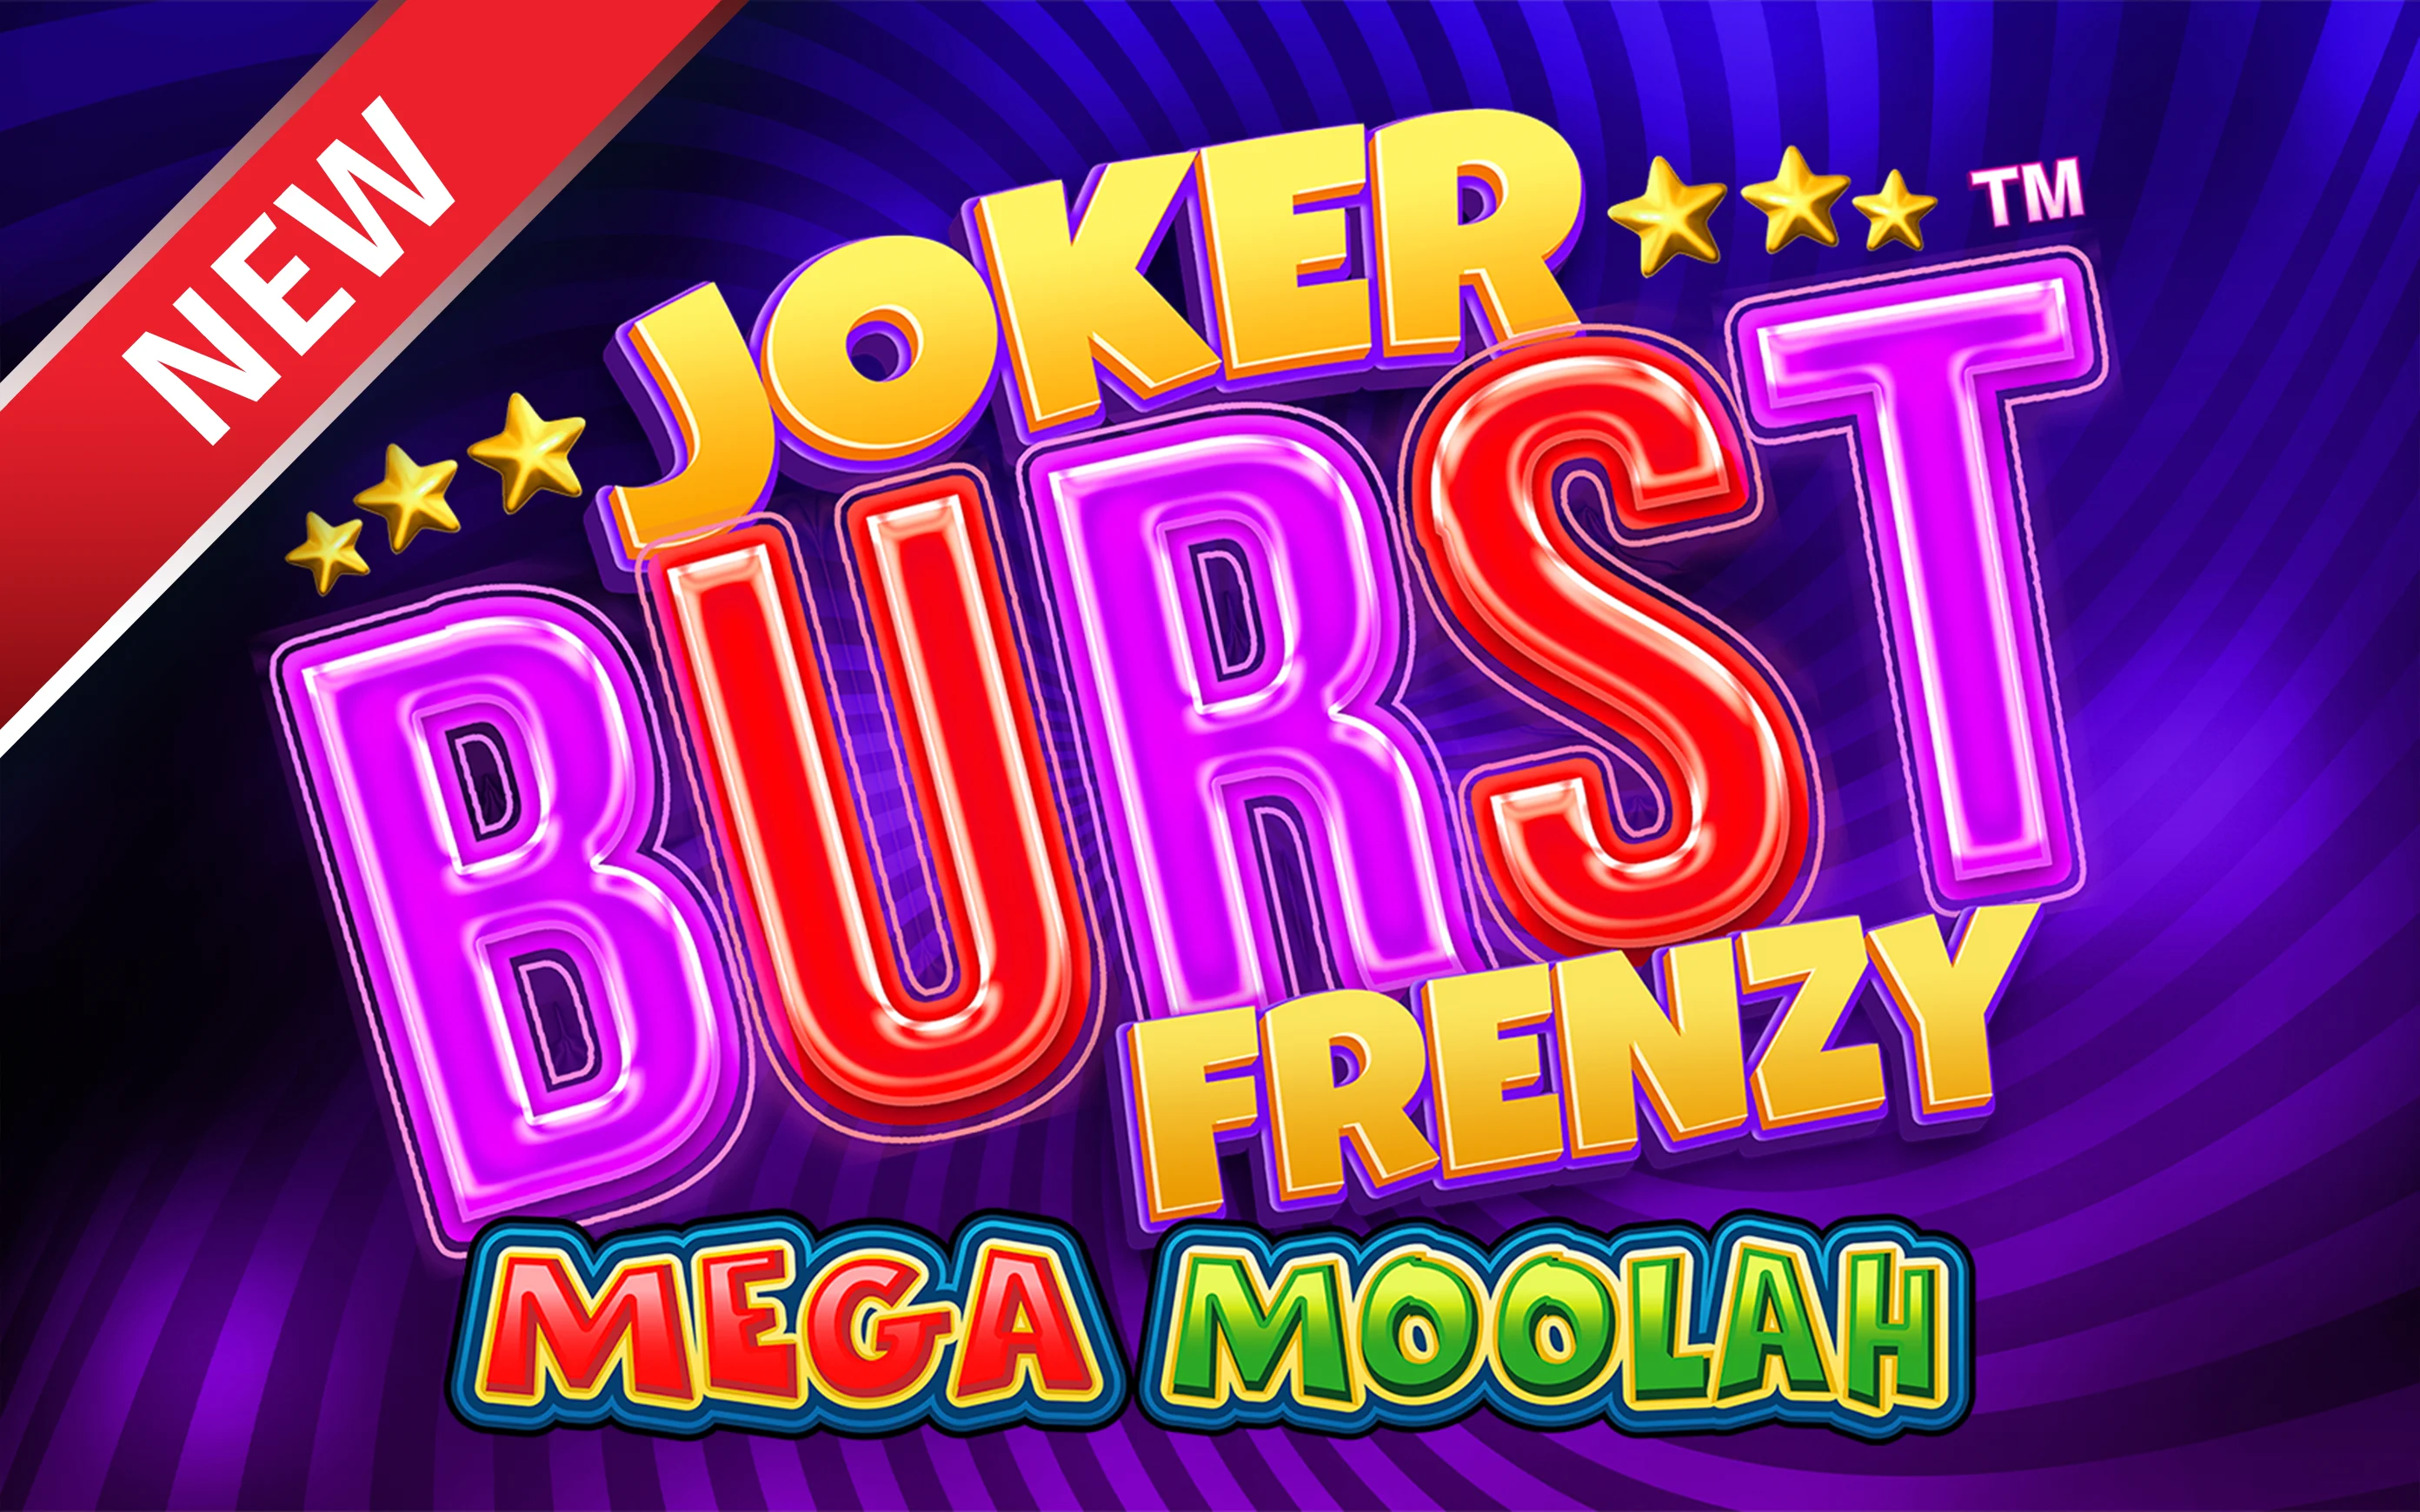 Грайте у Joker Burst Frenzy Mega Moolah в онлайн-казино Starcasino.be